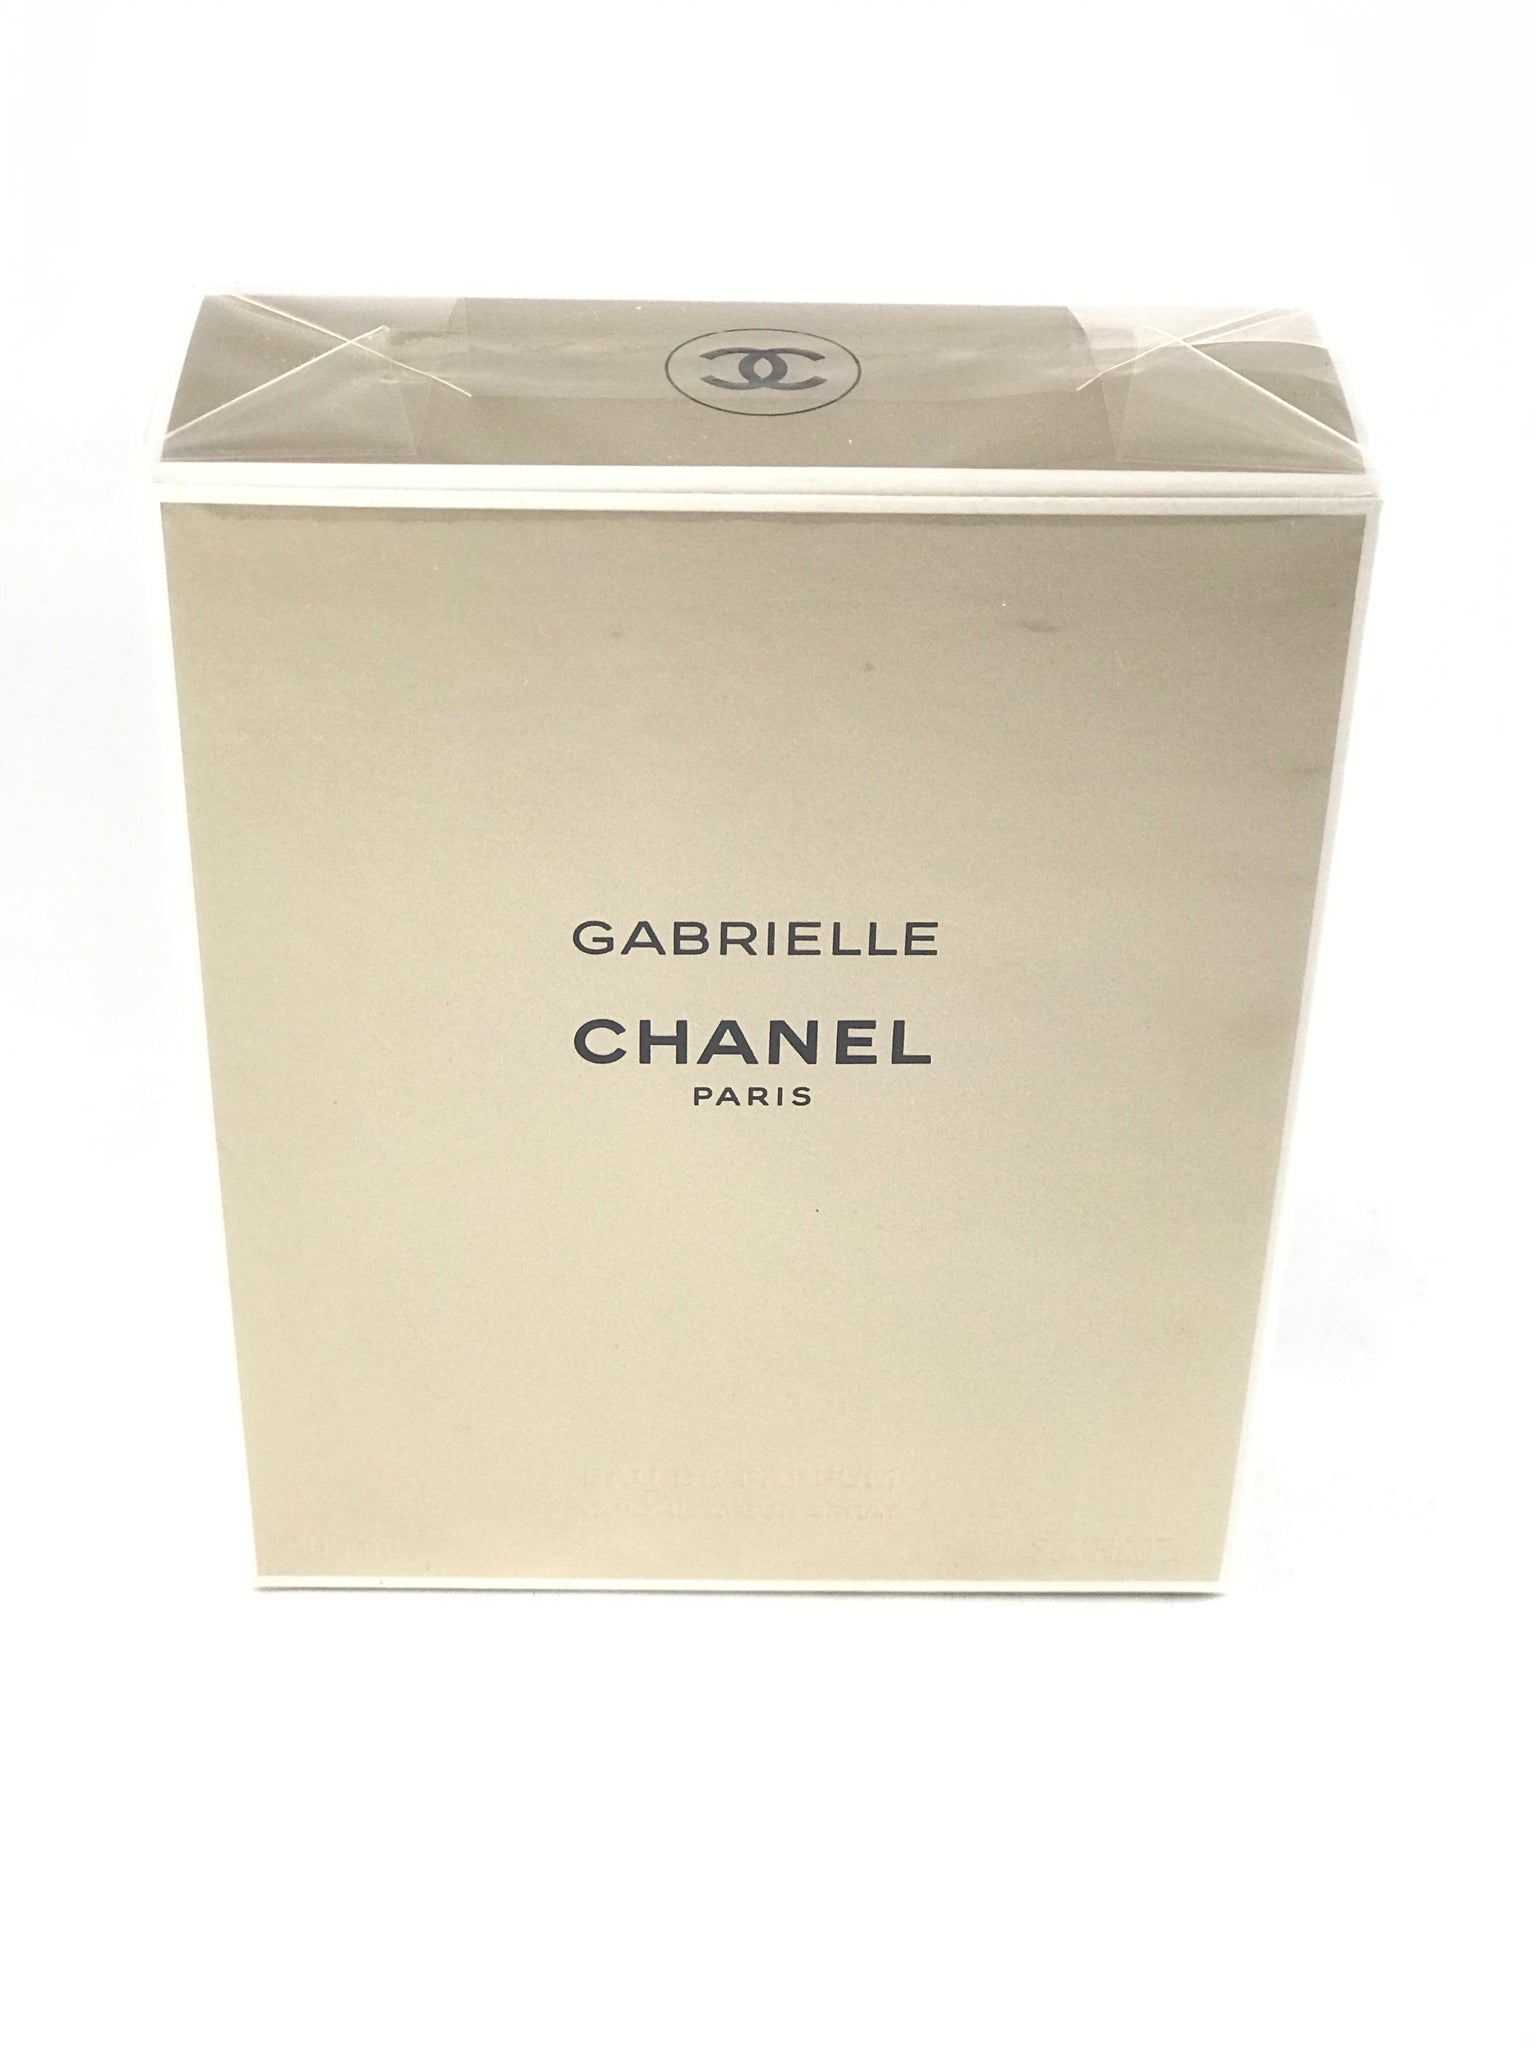 Gabrielle Essence by Chanel Eau De Parfum Spray 3.4 oz / 100 ml